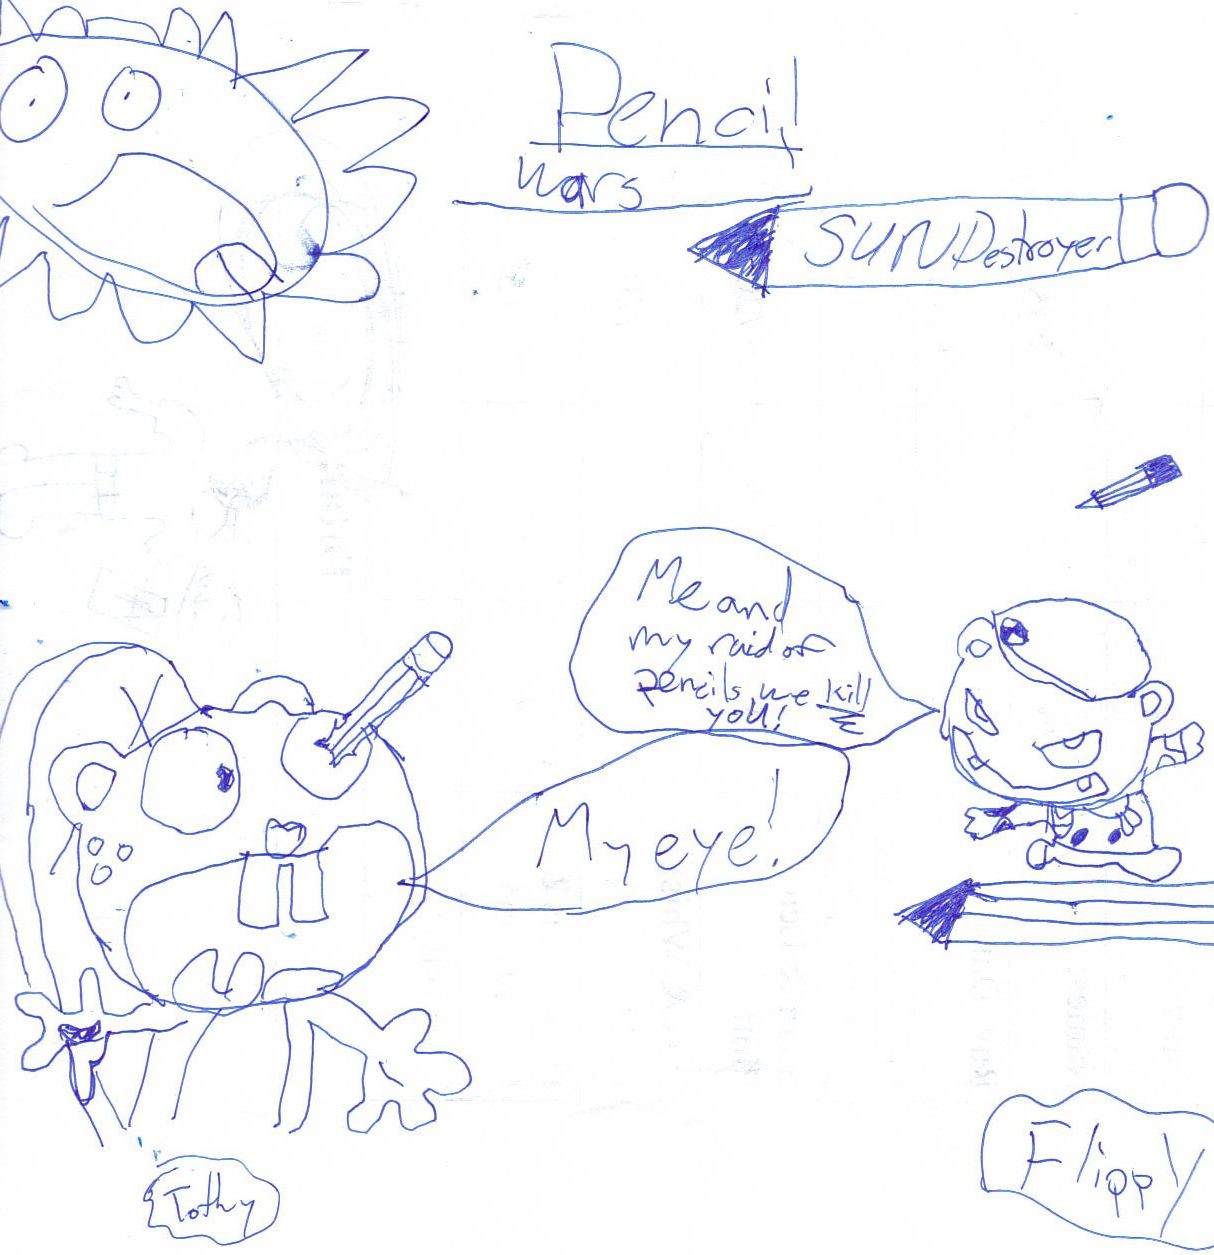 Pencil Wars by nagoshi7